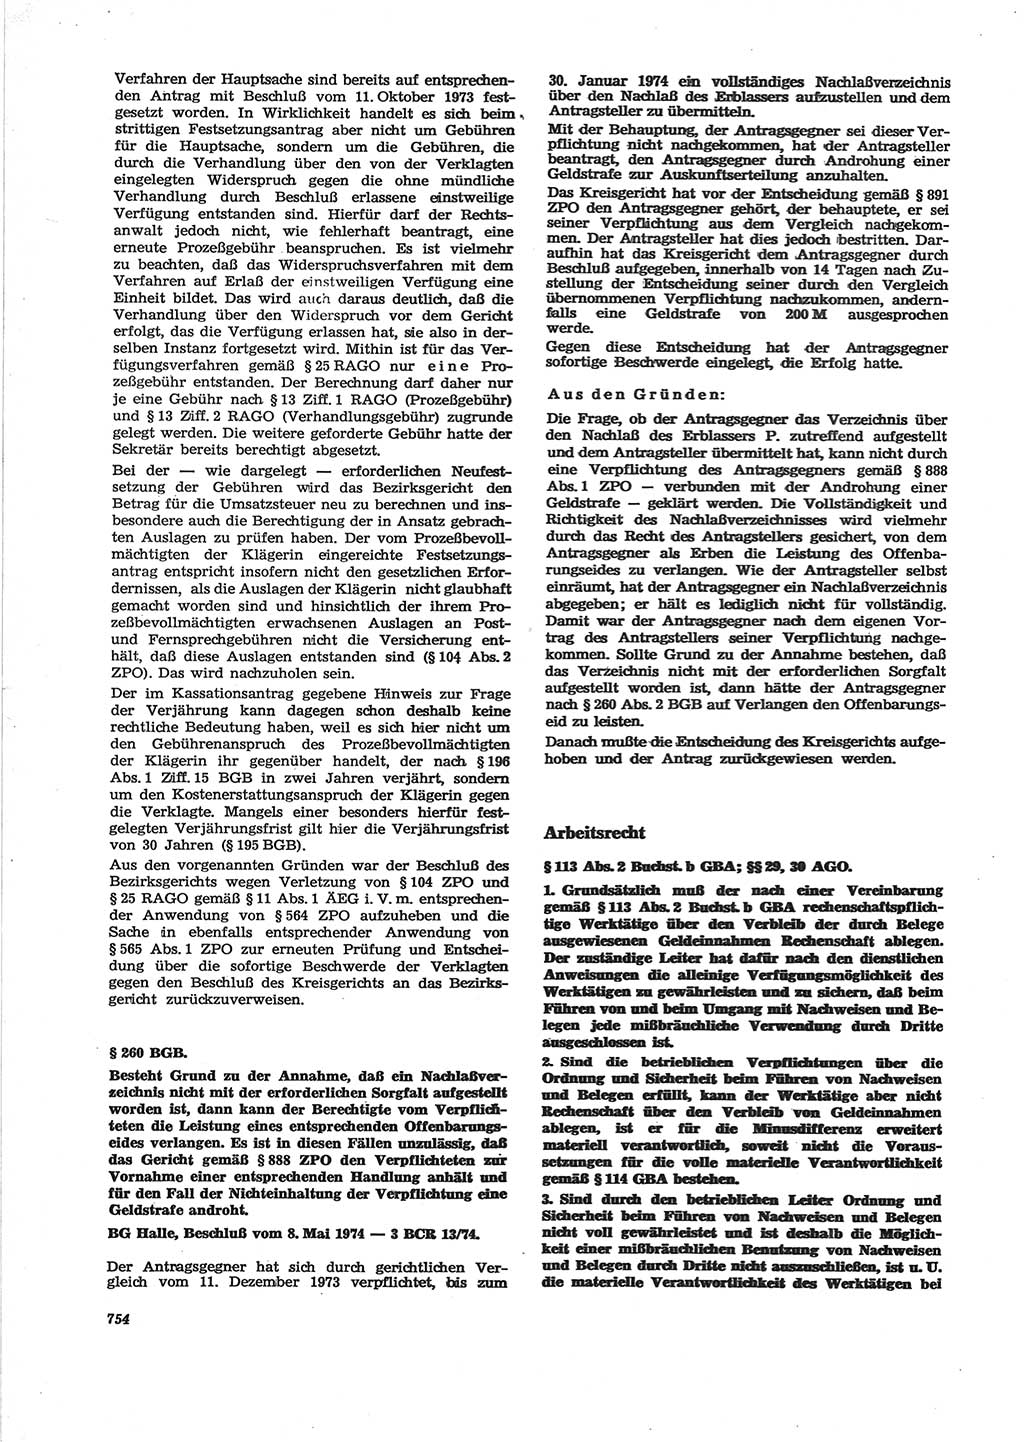 Neue Justiz (NJ), Zeitschrift für Recht und Rechtswissenschaft [Deutsche Demokratische Republik (DDR)], 28. Jahrgang 1974, Seite 754 (NJ DDR 1974, S. 754)